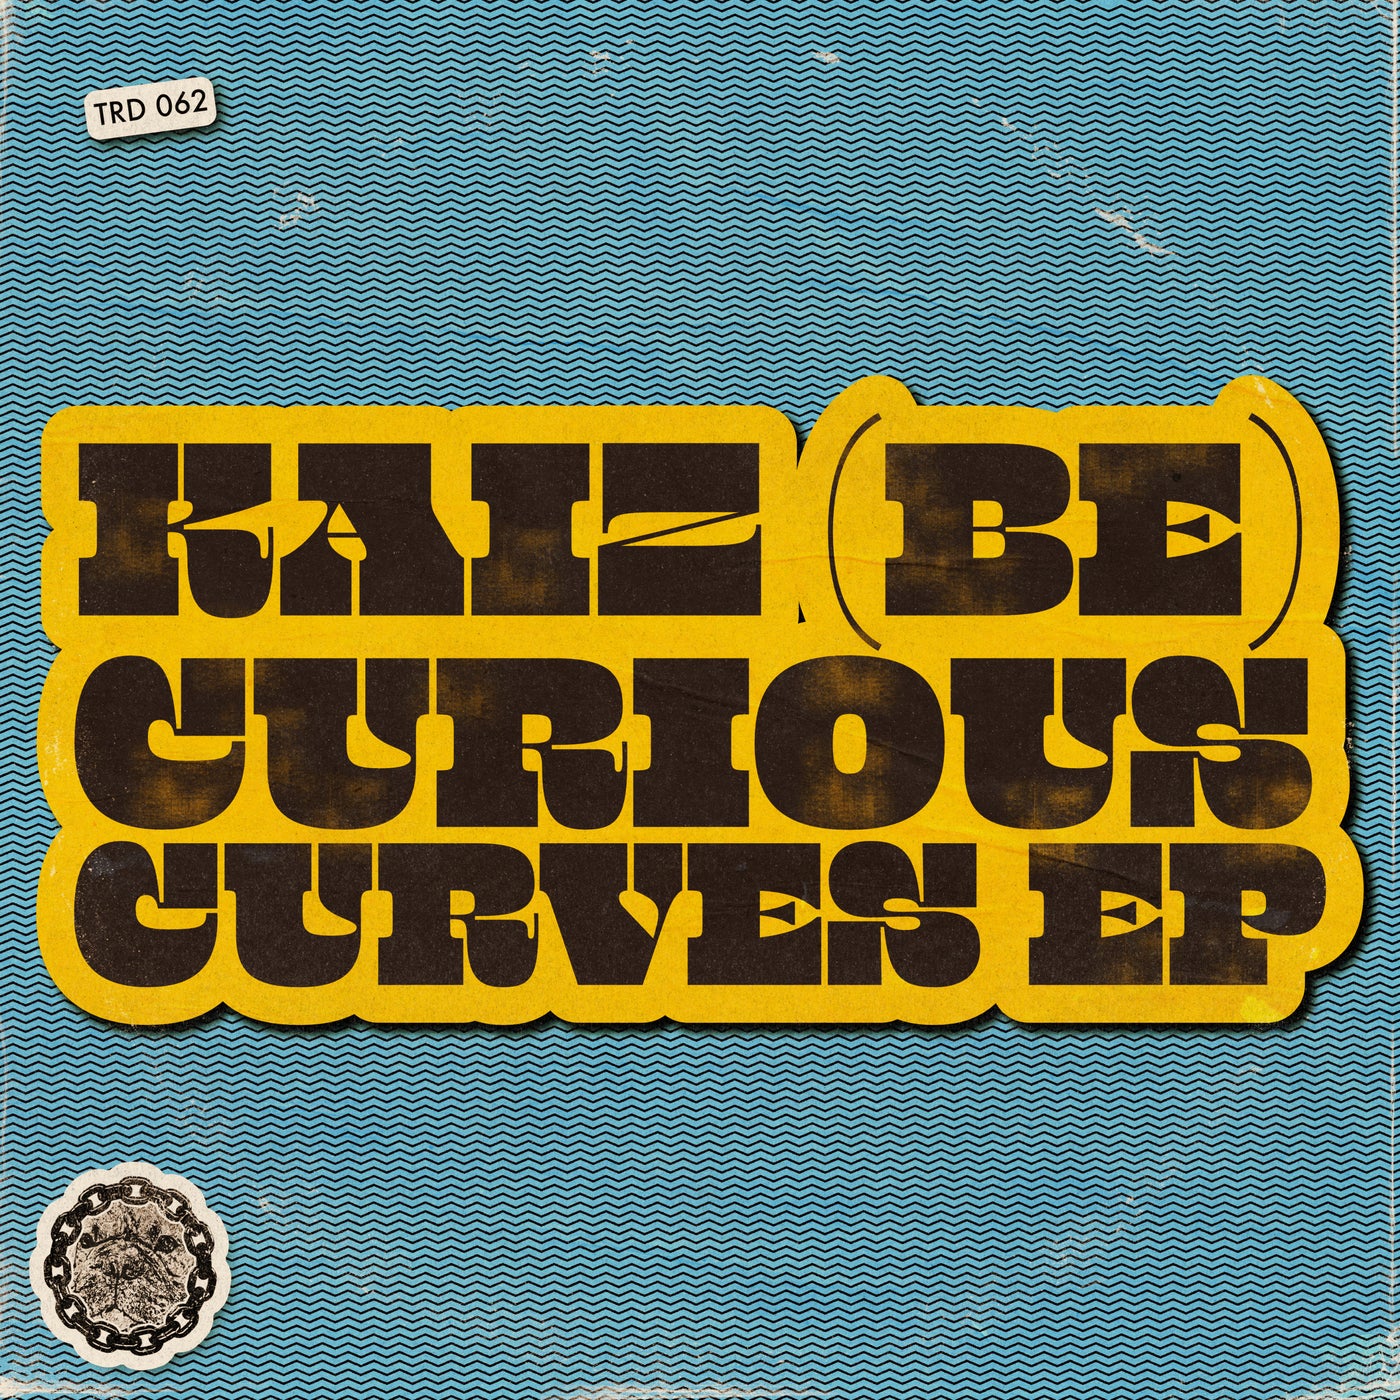 Curious Curves EP